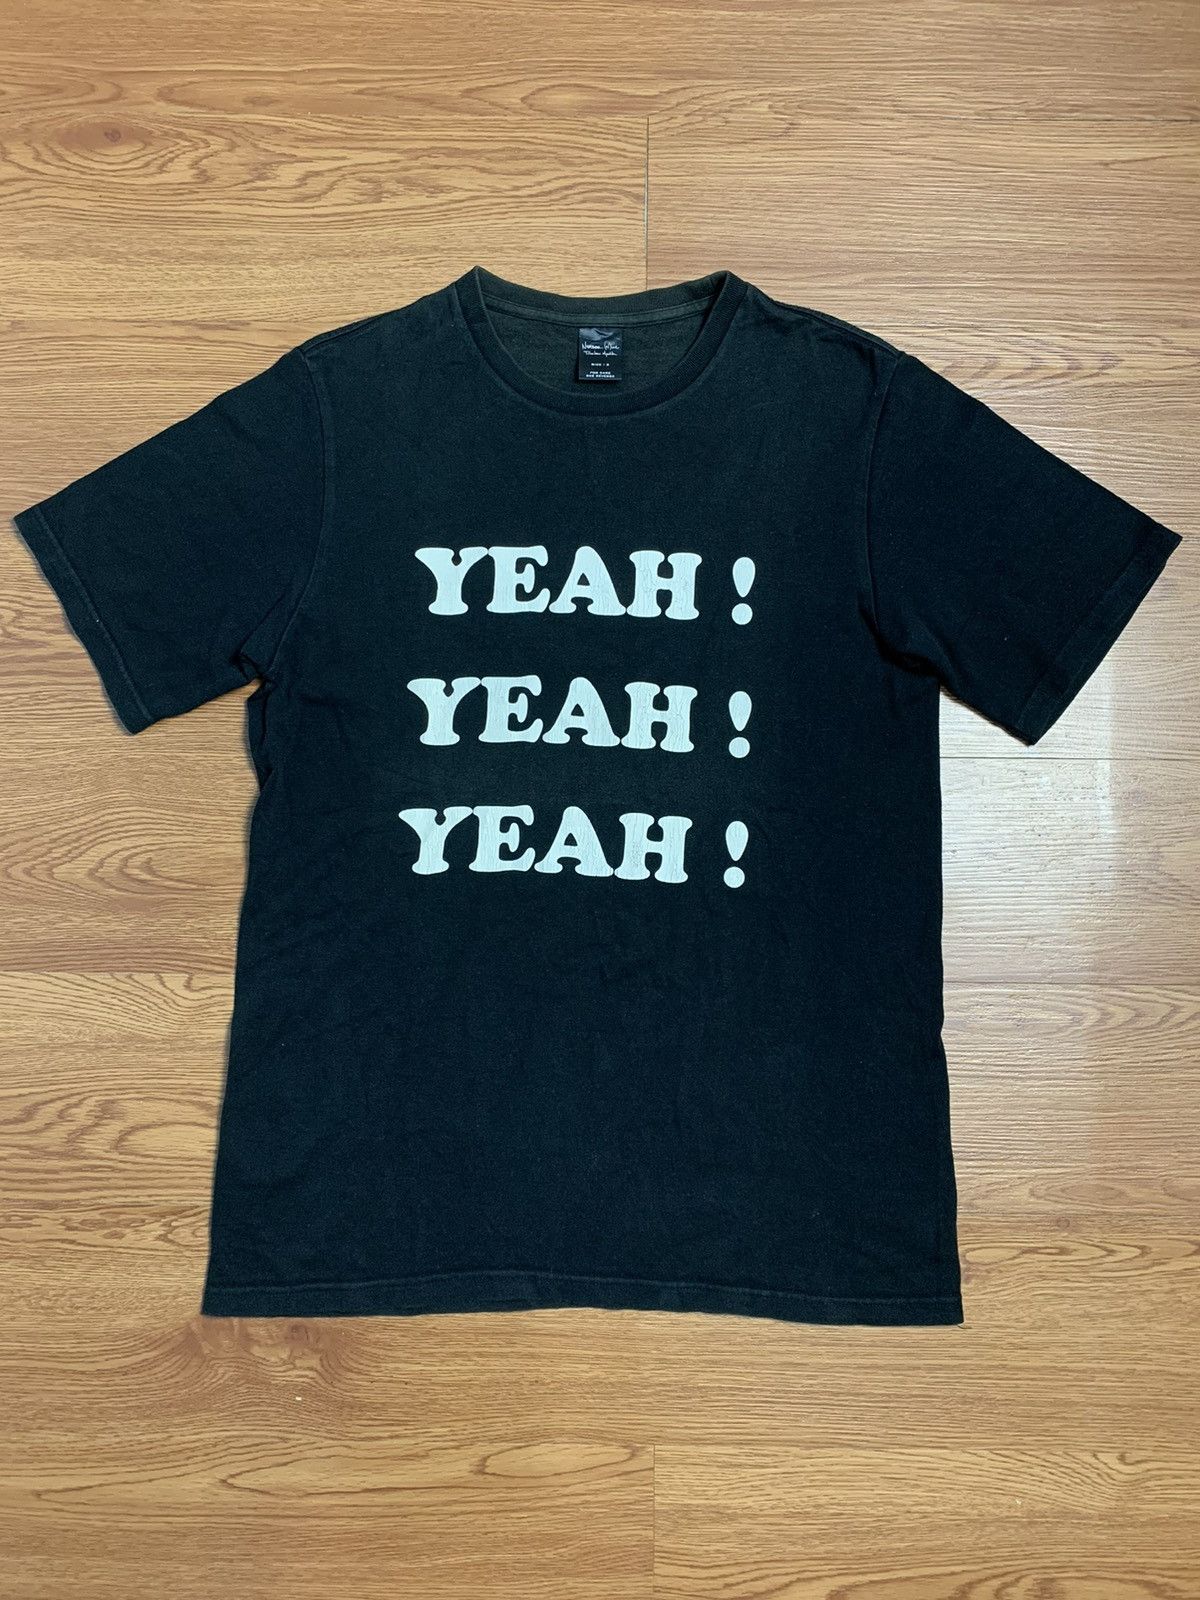 Pre-owned Number N Ine Ss03 Number Nine “yeah ! Yeah ! Yeah !” Shirt In Black